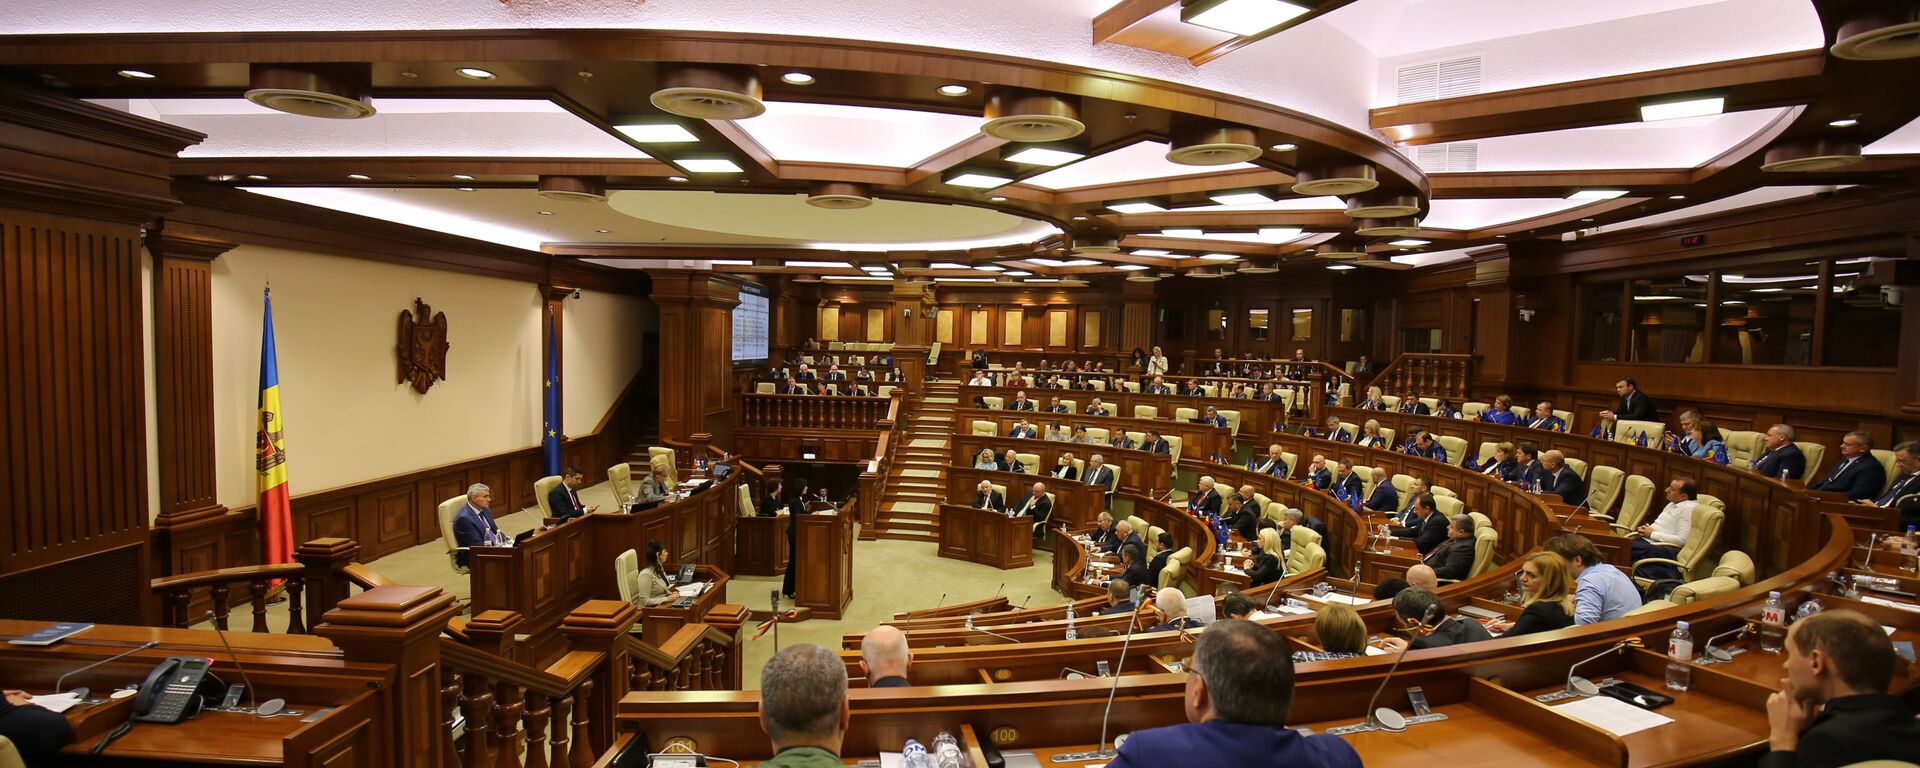 Заседание парламента РМ – вотум недоверия правительству Санду / Ședința Parlamentului RM – Moțiunea de cenzură - Sputnik Moldova, 1920, 17.05.2021